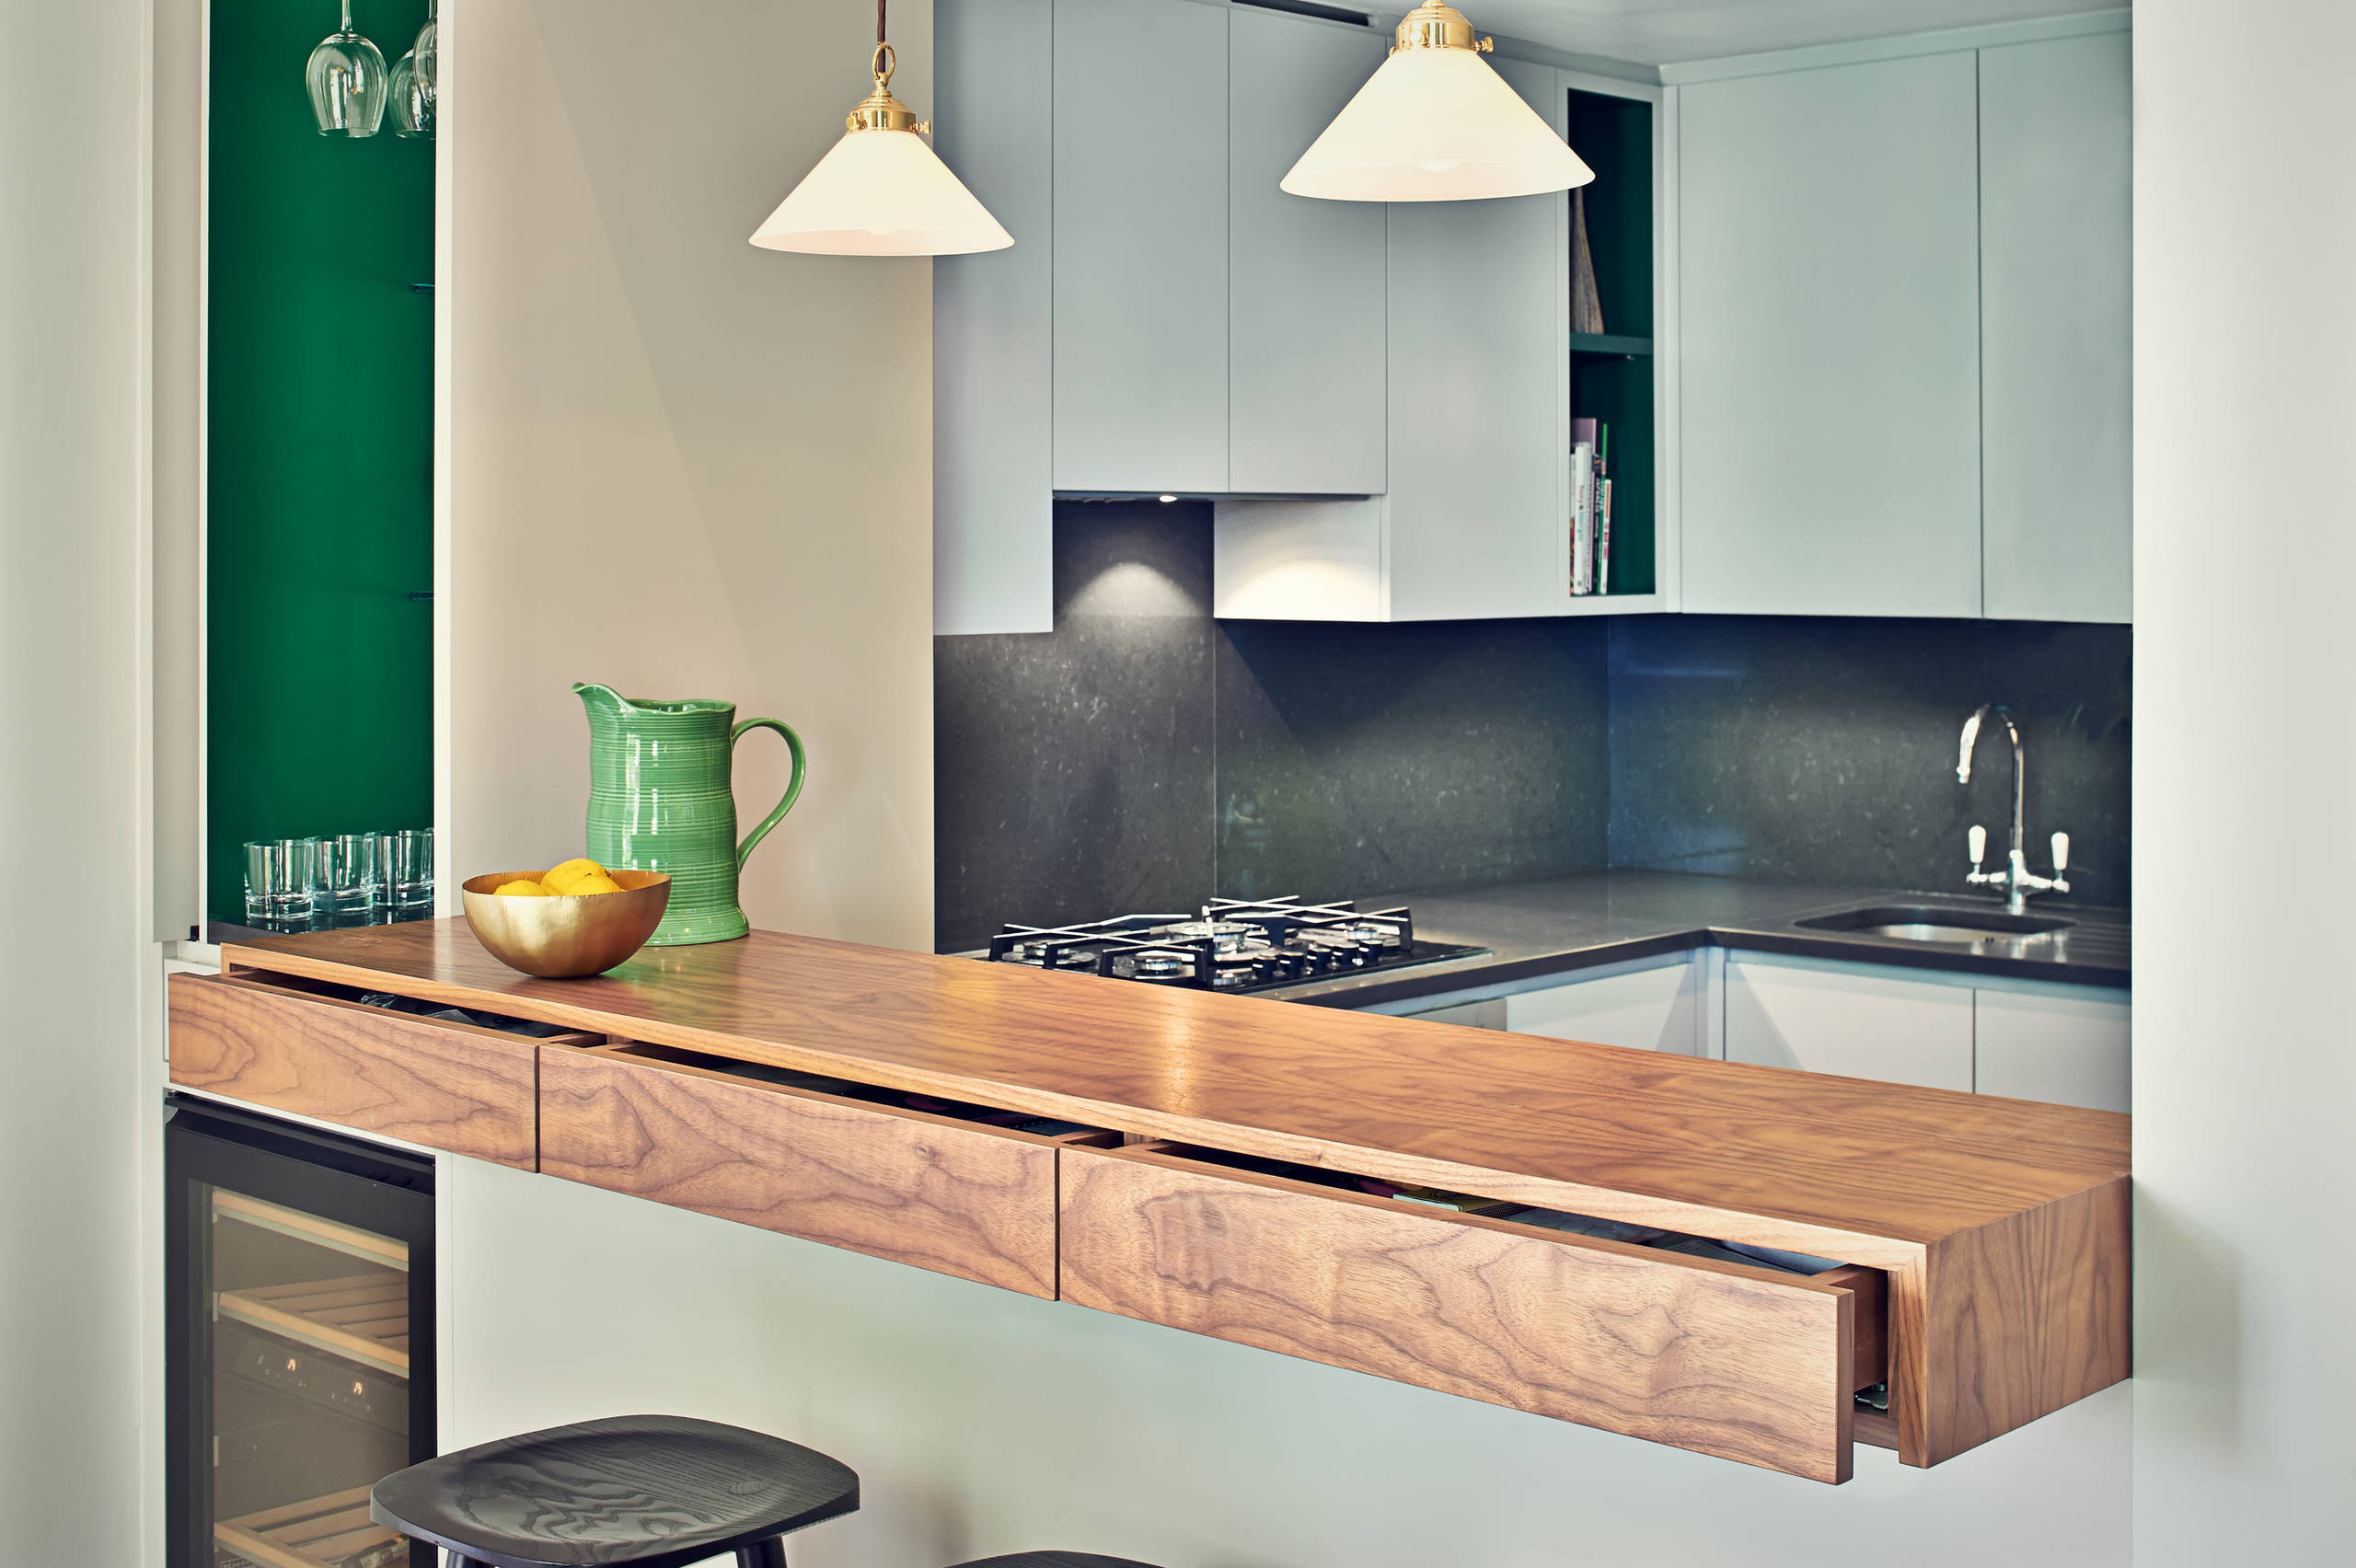 Обеденная зона на кухне, как стильно и уютно организовать пространство!